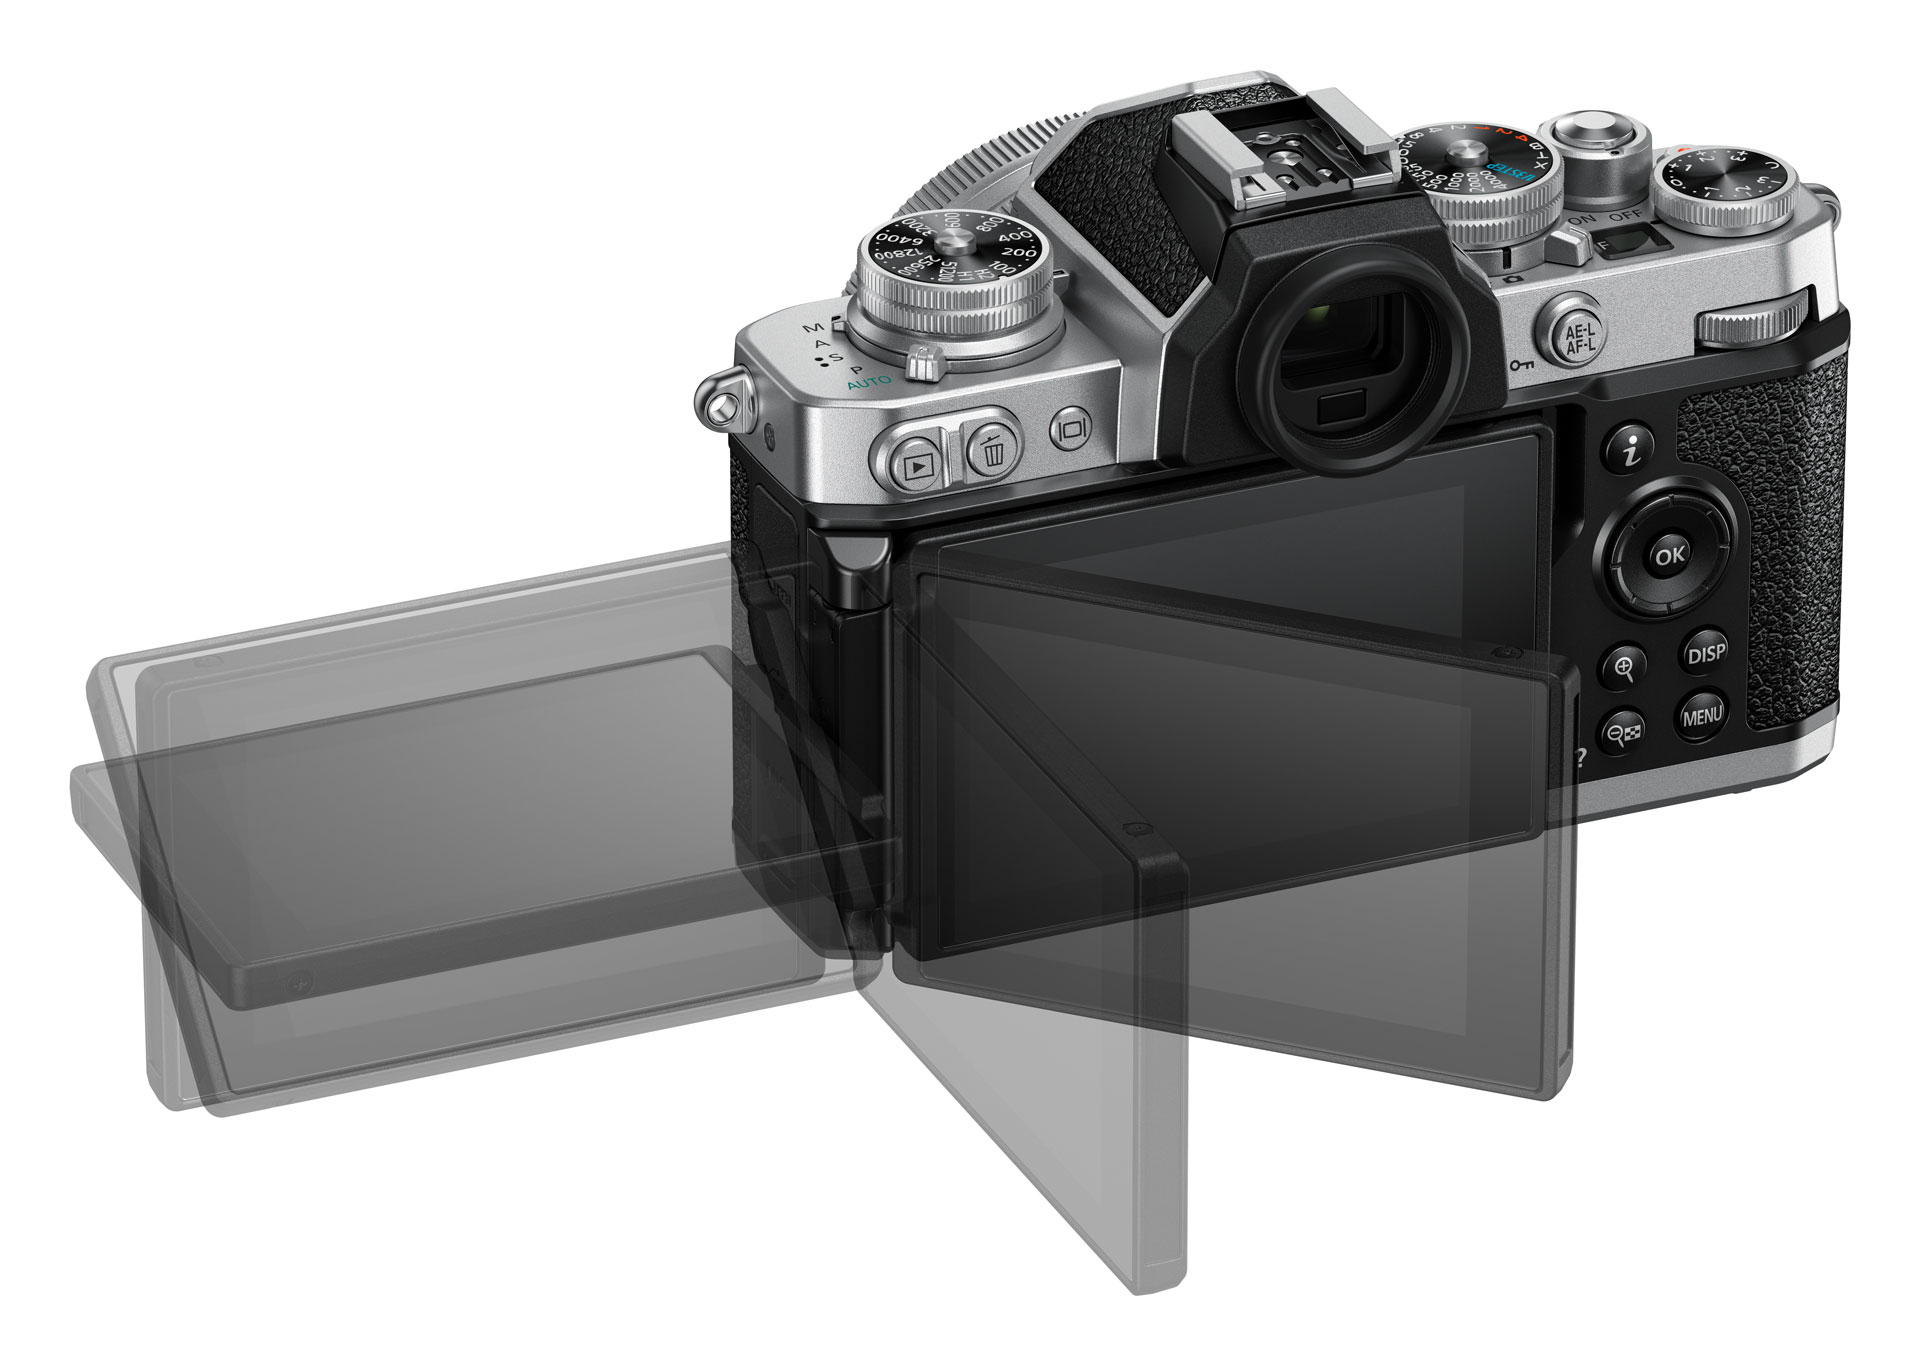 Nikon Z fc kommt als APS-C-Kamera Retro-Look -